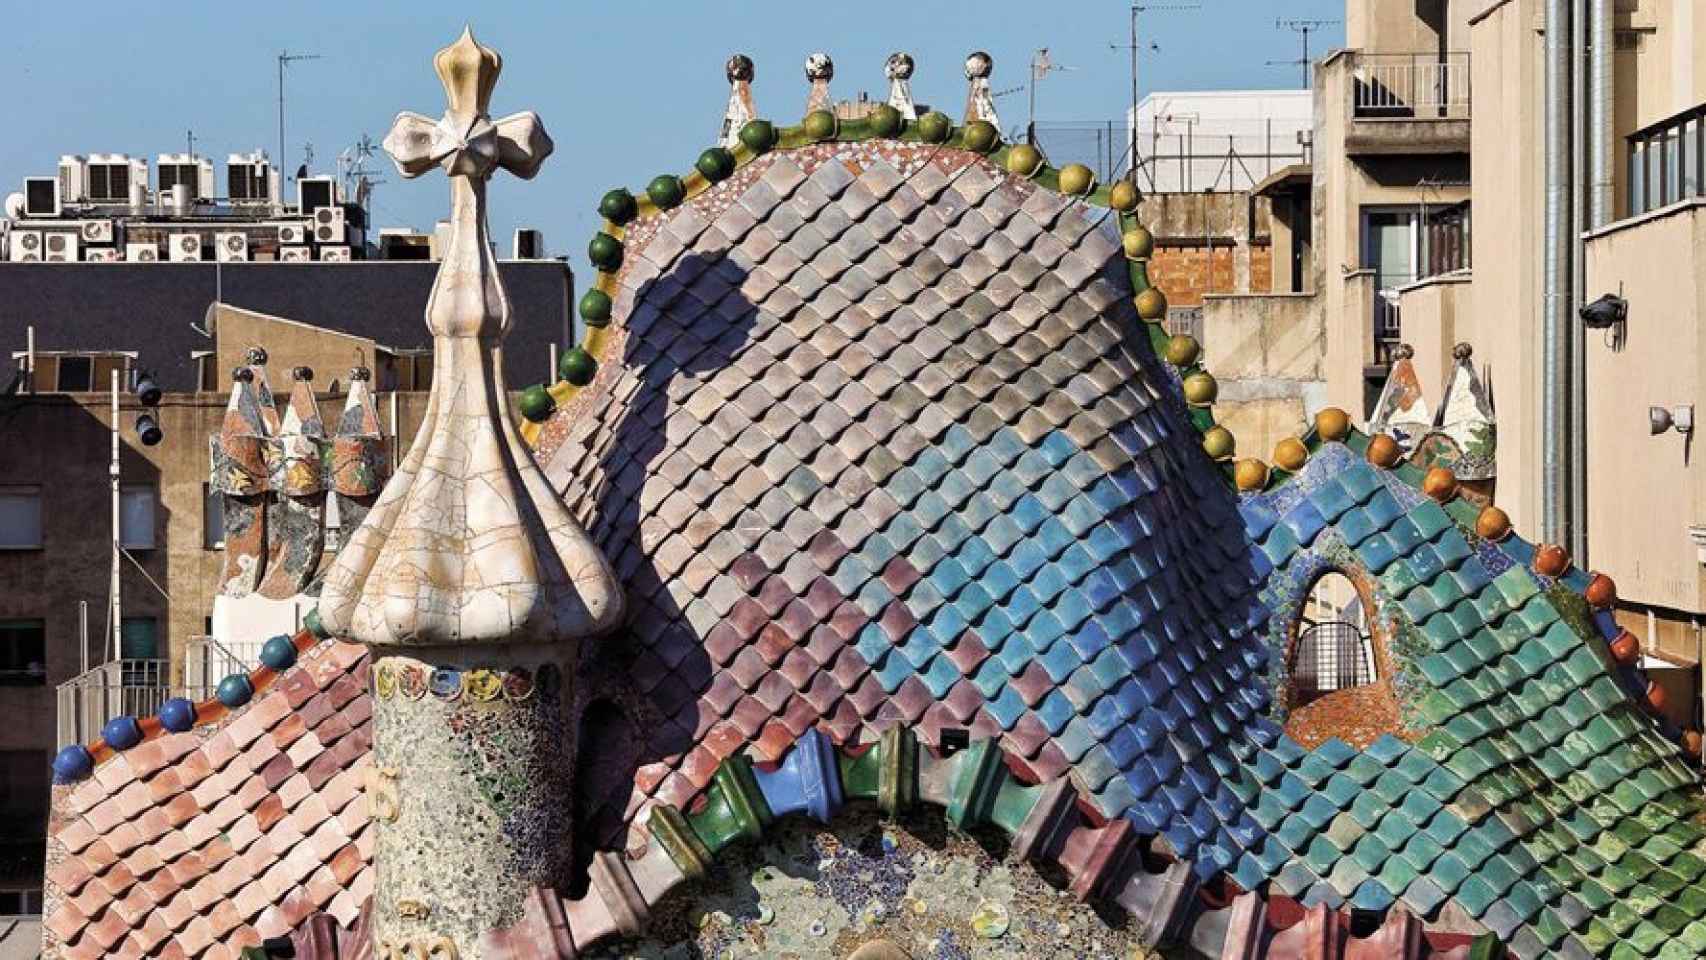 La Casa Batlló ofrece una noche de música en directo en su terraza / Casa Batlló